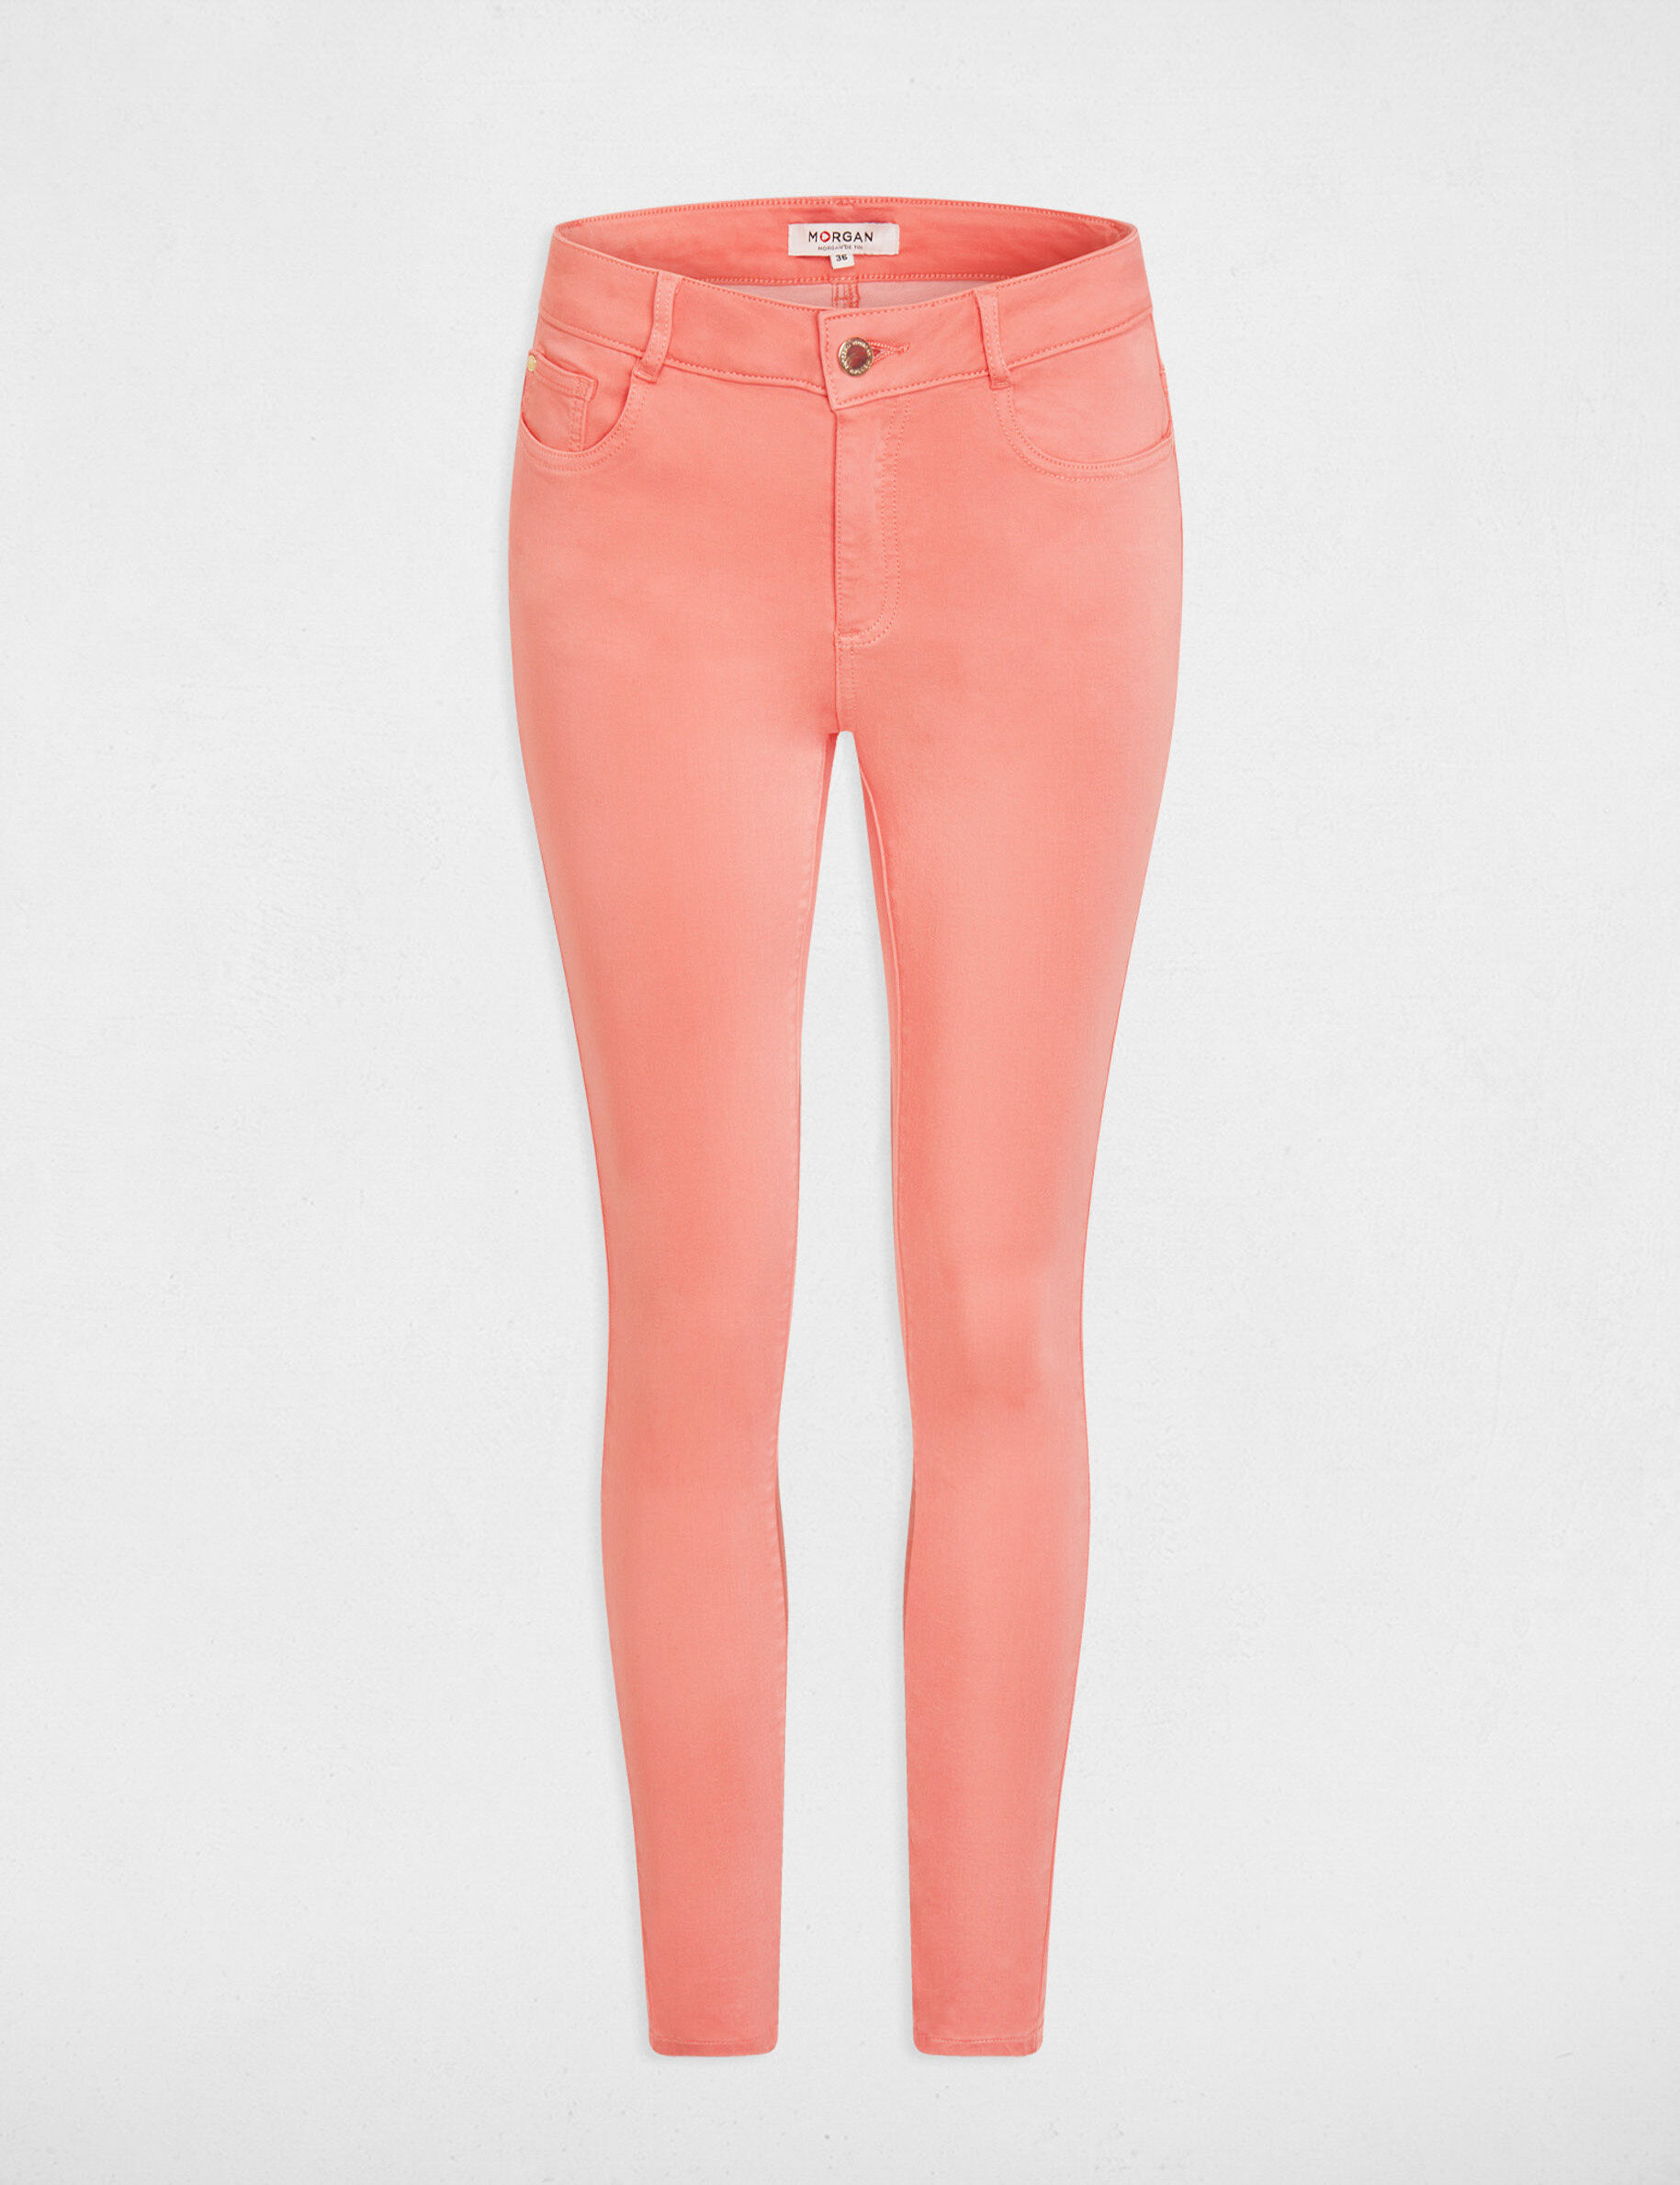 Peach cotton casual wear plain pant - G3-WFP57 | G3fashion.com